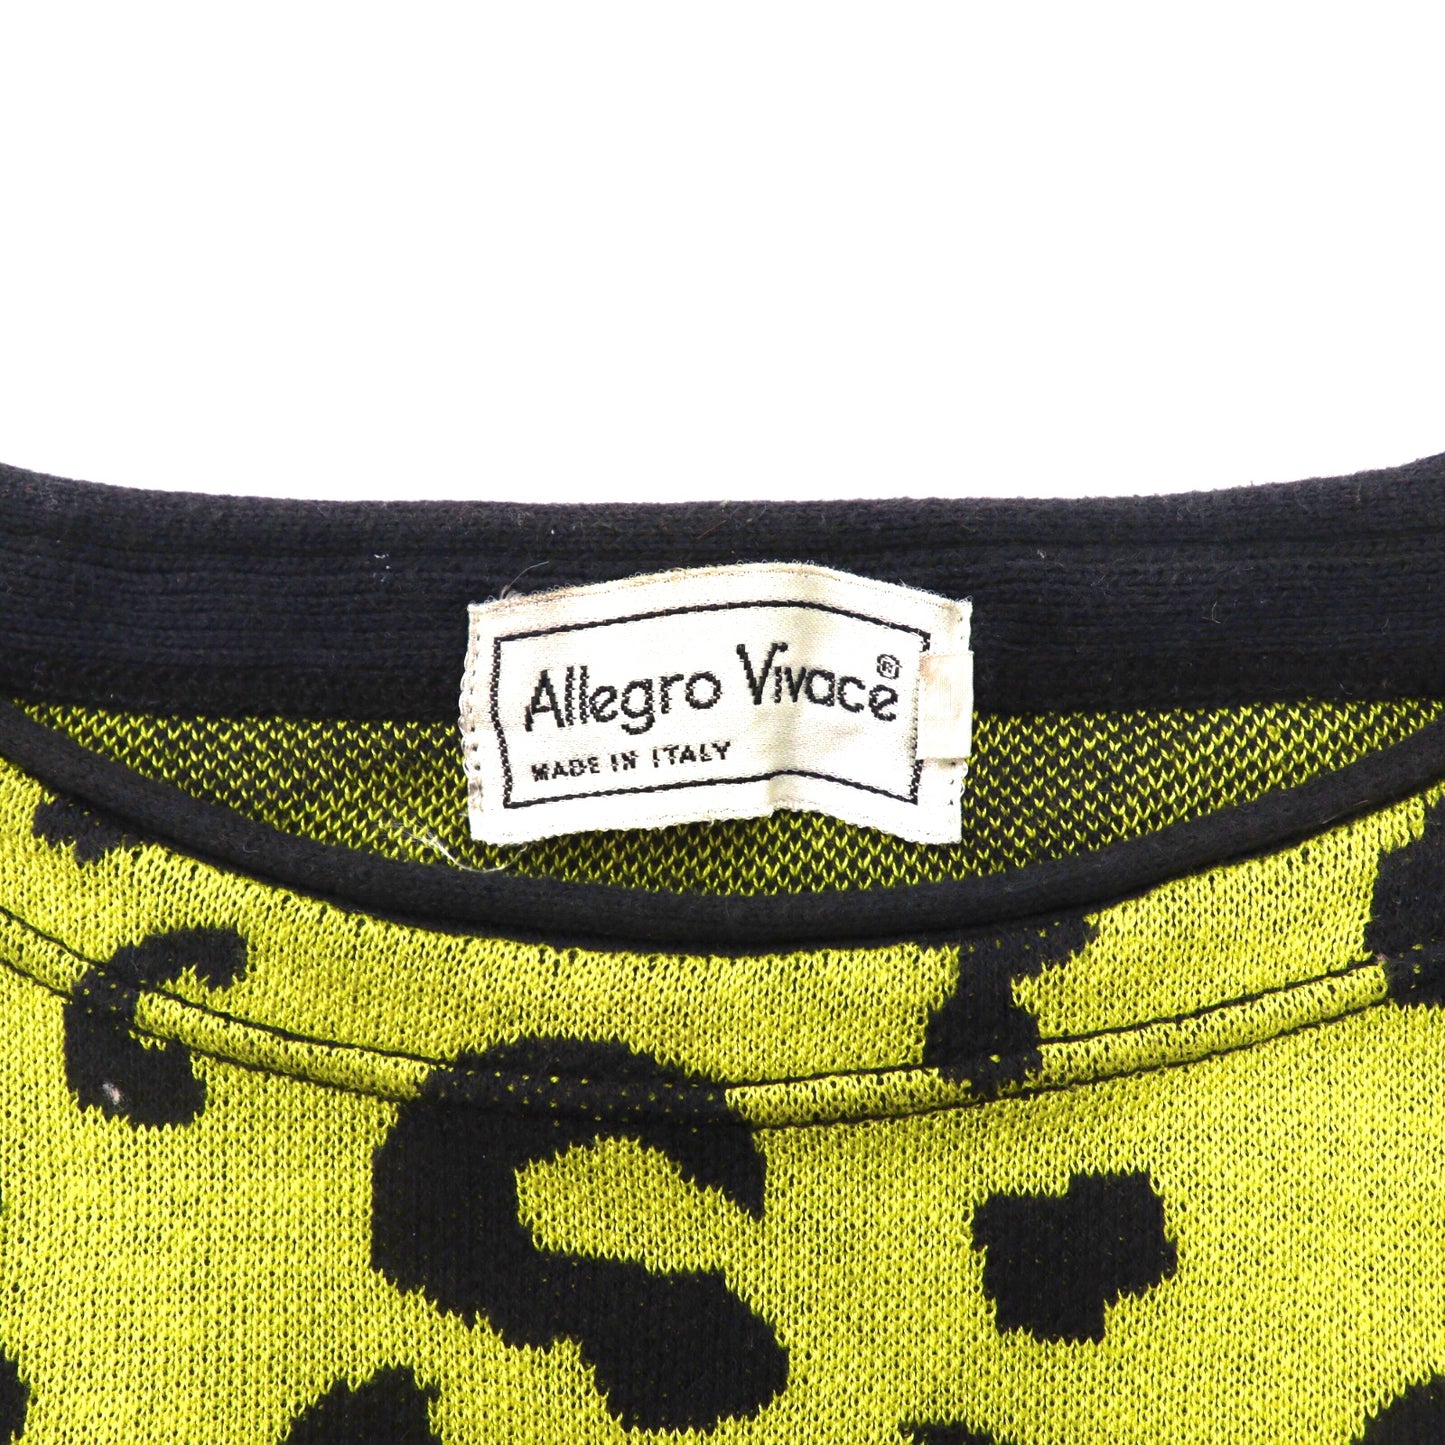 Allegro Vivace 総柄ニットセーター 48 マルチカラー アニマル柄 イタリア製